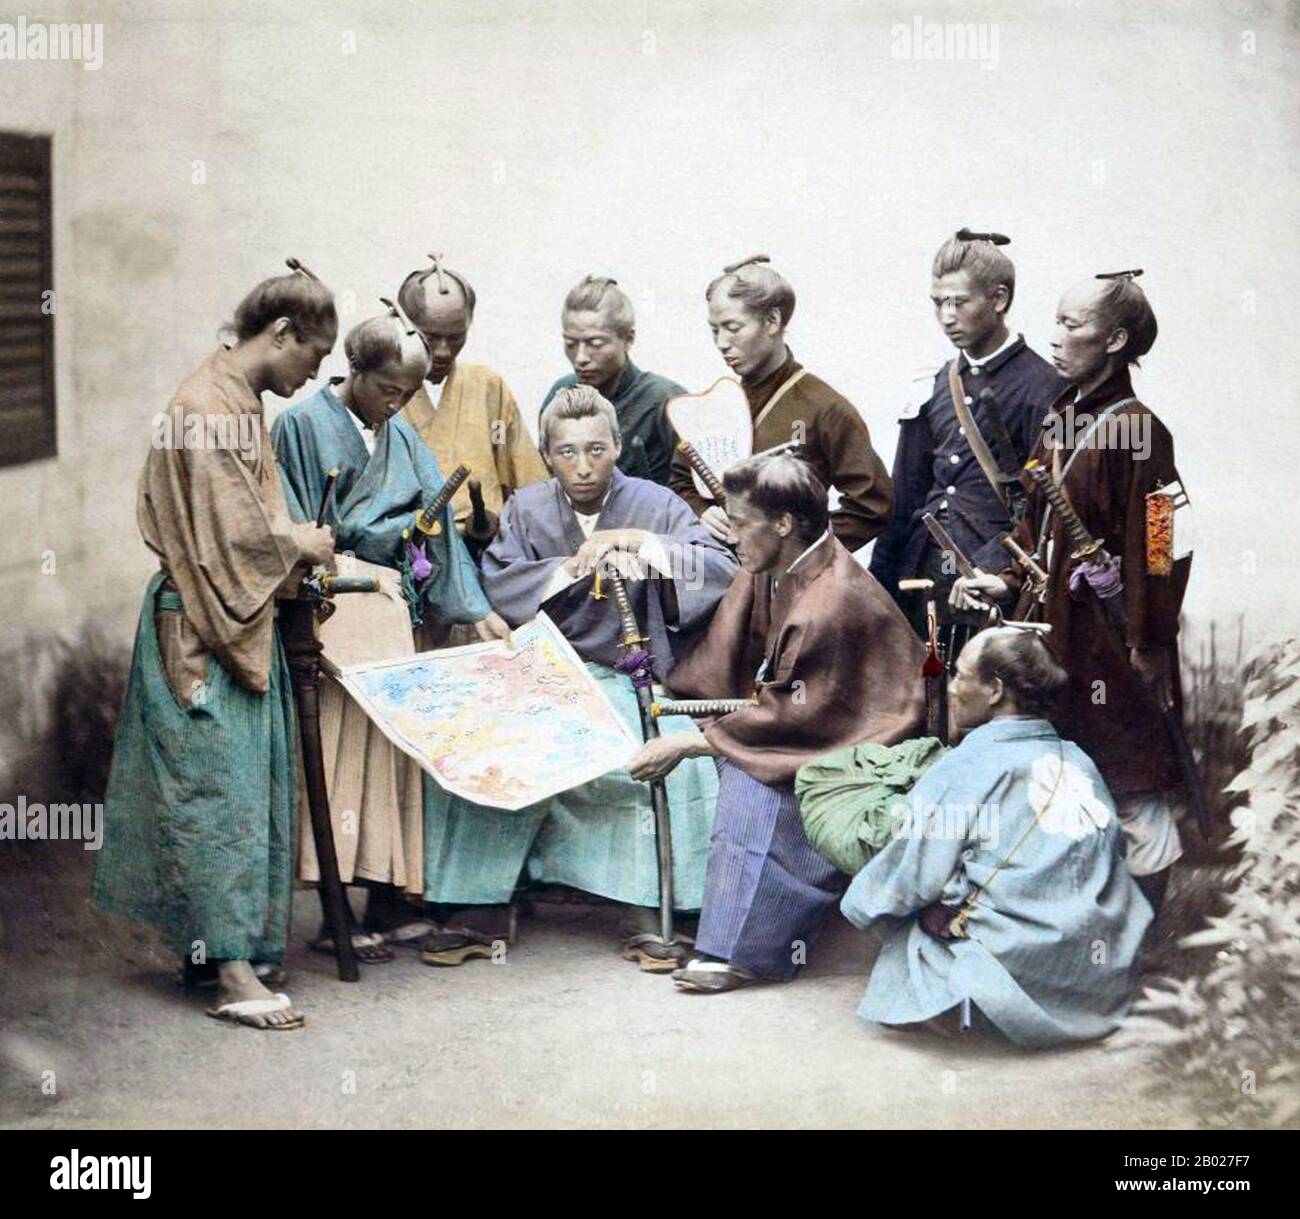 La guerre de Boshin (戊辰戦争 Boshin Sensō) était une guerre civile au Japon, combattue de 1868 à 1869 entre les forces du Shogunat Tokugawa au pouvoir et celles qui cherchent à ramener le pouvoir politique à la cour impériale. La guerre a trouvé ses origines dans l'insatisfaction parmi de nombreux nobles et jeunes samouraïs avec la manipulation par le shogunat des étrangers après l'ouverture du Japon au cours de la décennie précédente. Une alliance de samouraï occidentaux (en particulier les domaines de Chōshū, Satsuma et Tosa) et de fonctionnaires de la cour ont assuré le contrôle de la cour impériale et influencé le jeune empereur Meiji. Tokugawa Yoshinobu, les sièges Banque D'Images